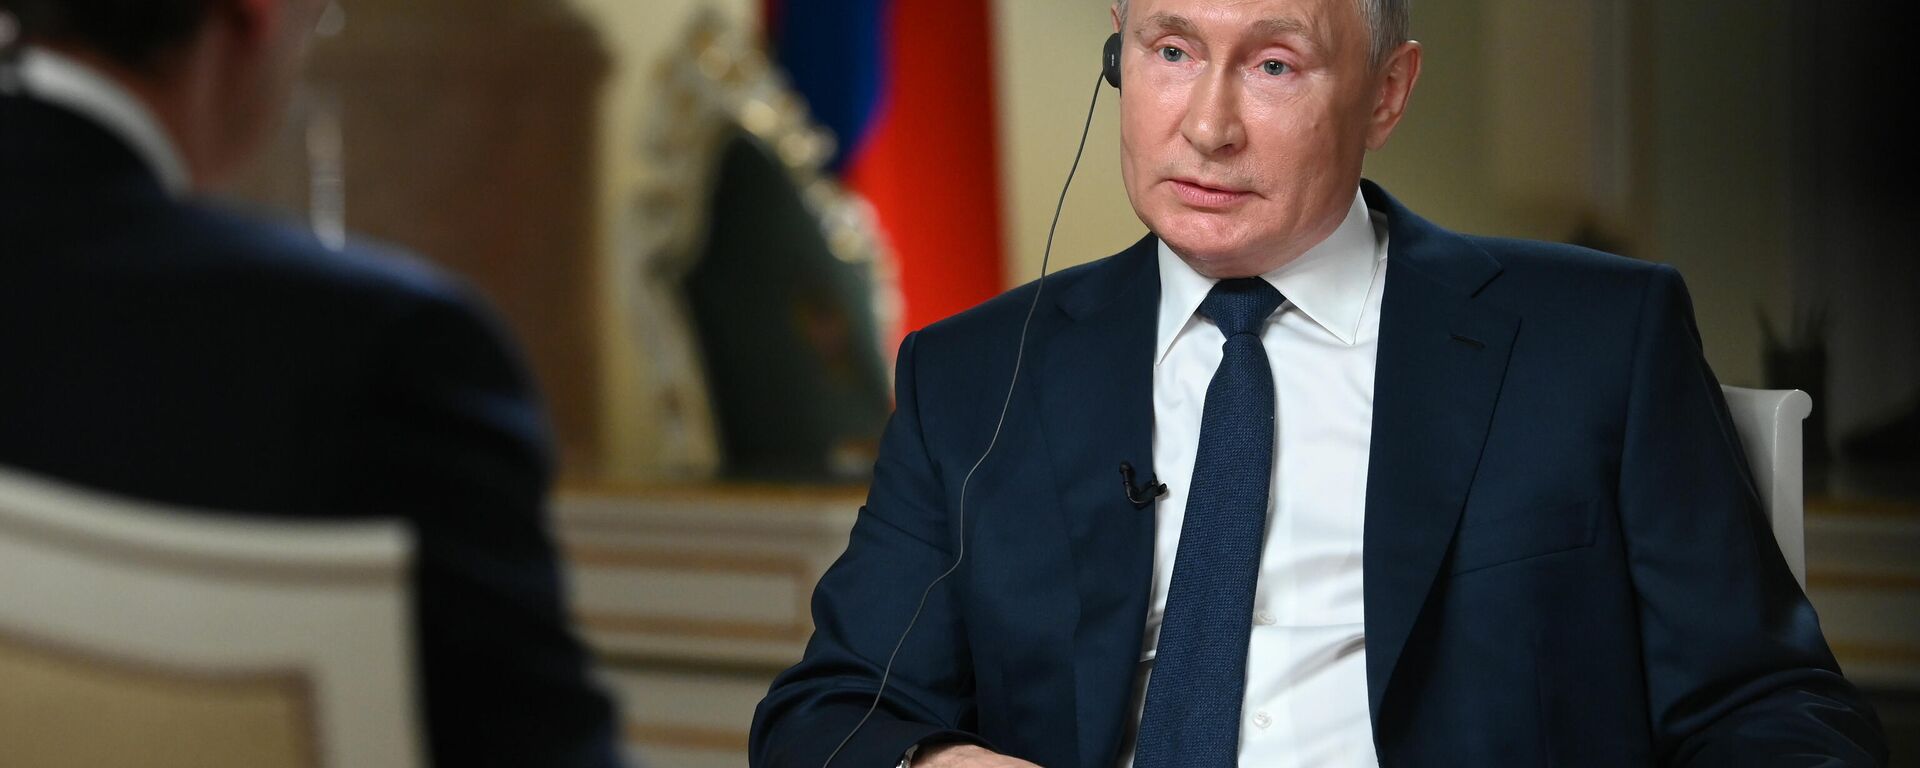 Rusijos prezidentas Vladimiras Putinas davė interviu Amerikos televizijos kompanijai NBC - Sputnik Lietuva, 1920, 16.06.2021